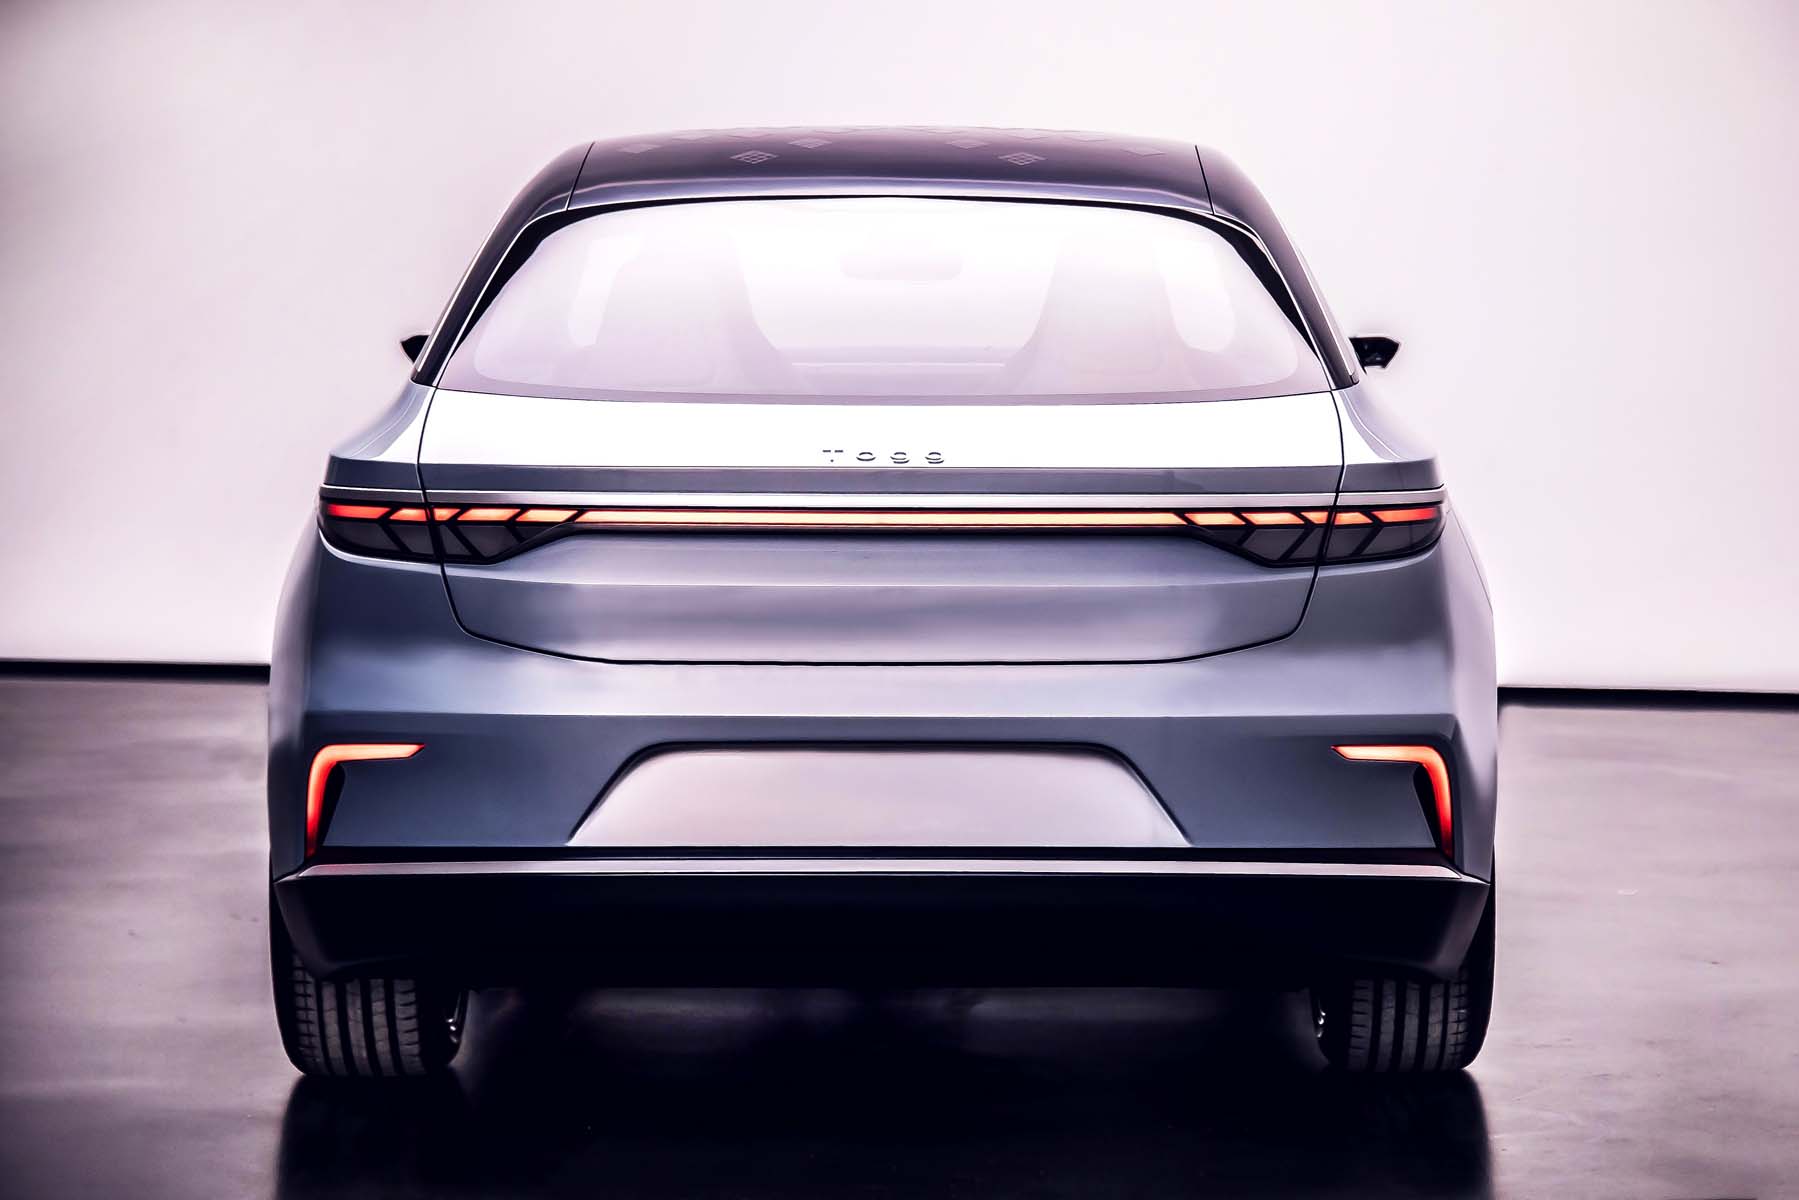 Yerli otomobil TOGG, dünya sahnesine çıktı, CES 2022'de sergilendi! Yeni sedan model görenleri mest etti 